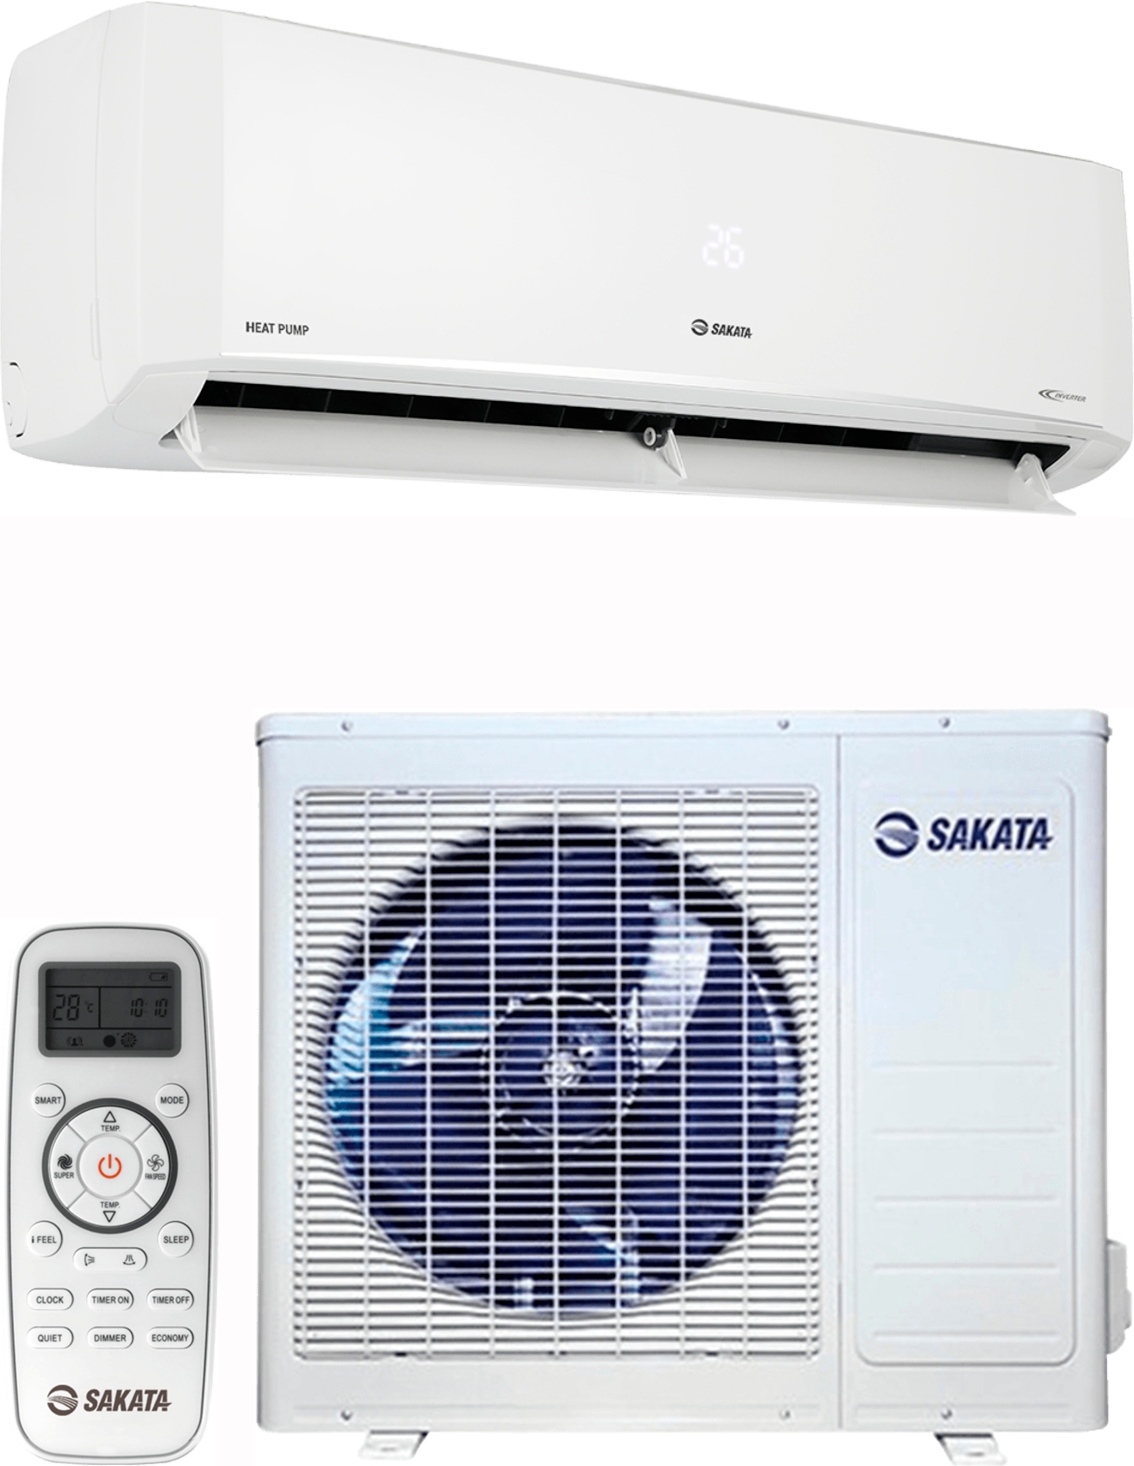 Инструкция тепловой насос sakata воздух-воздух Sakata Heat Pump SIE-060SHCB/SOE-060VHCB